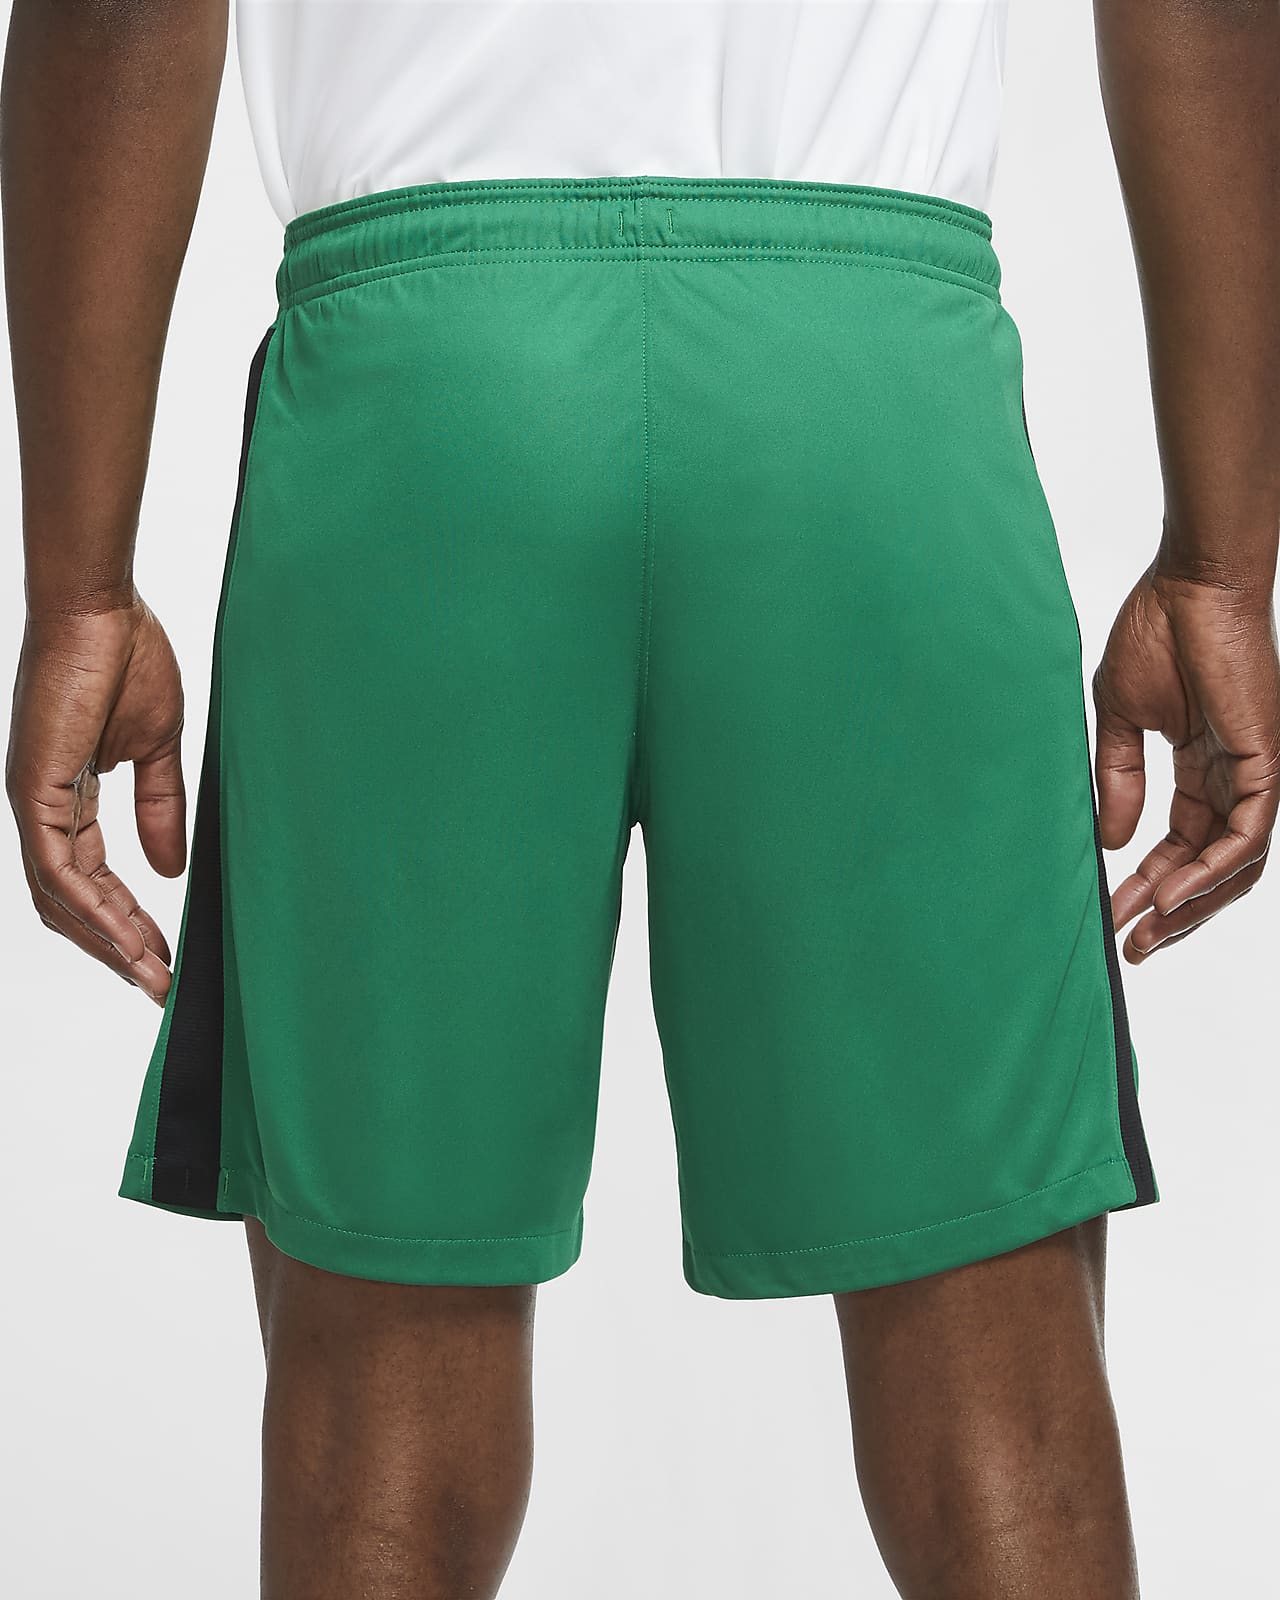 green nike soccer shorts